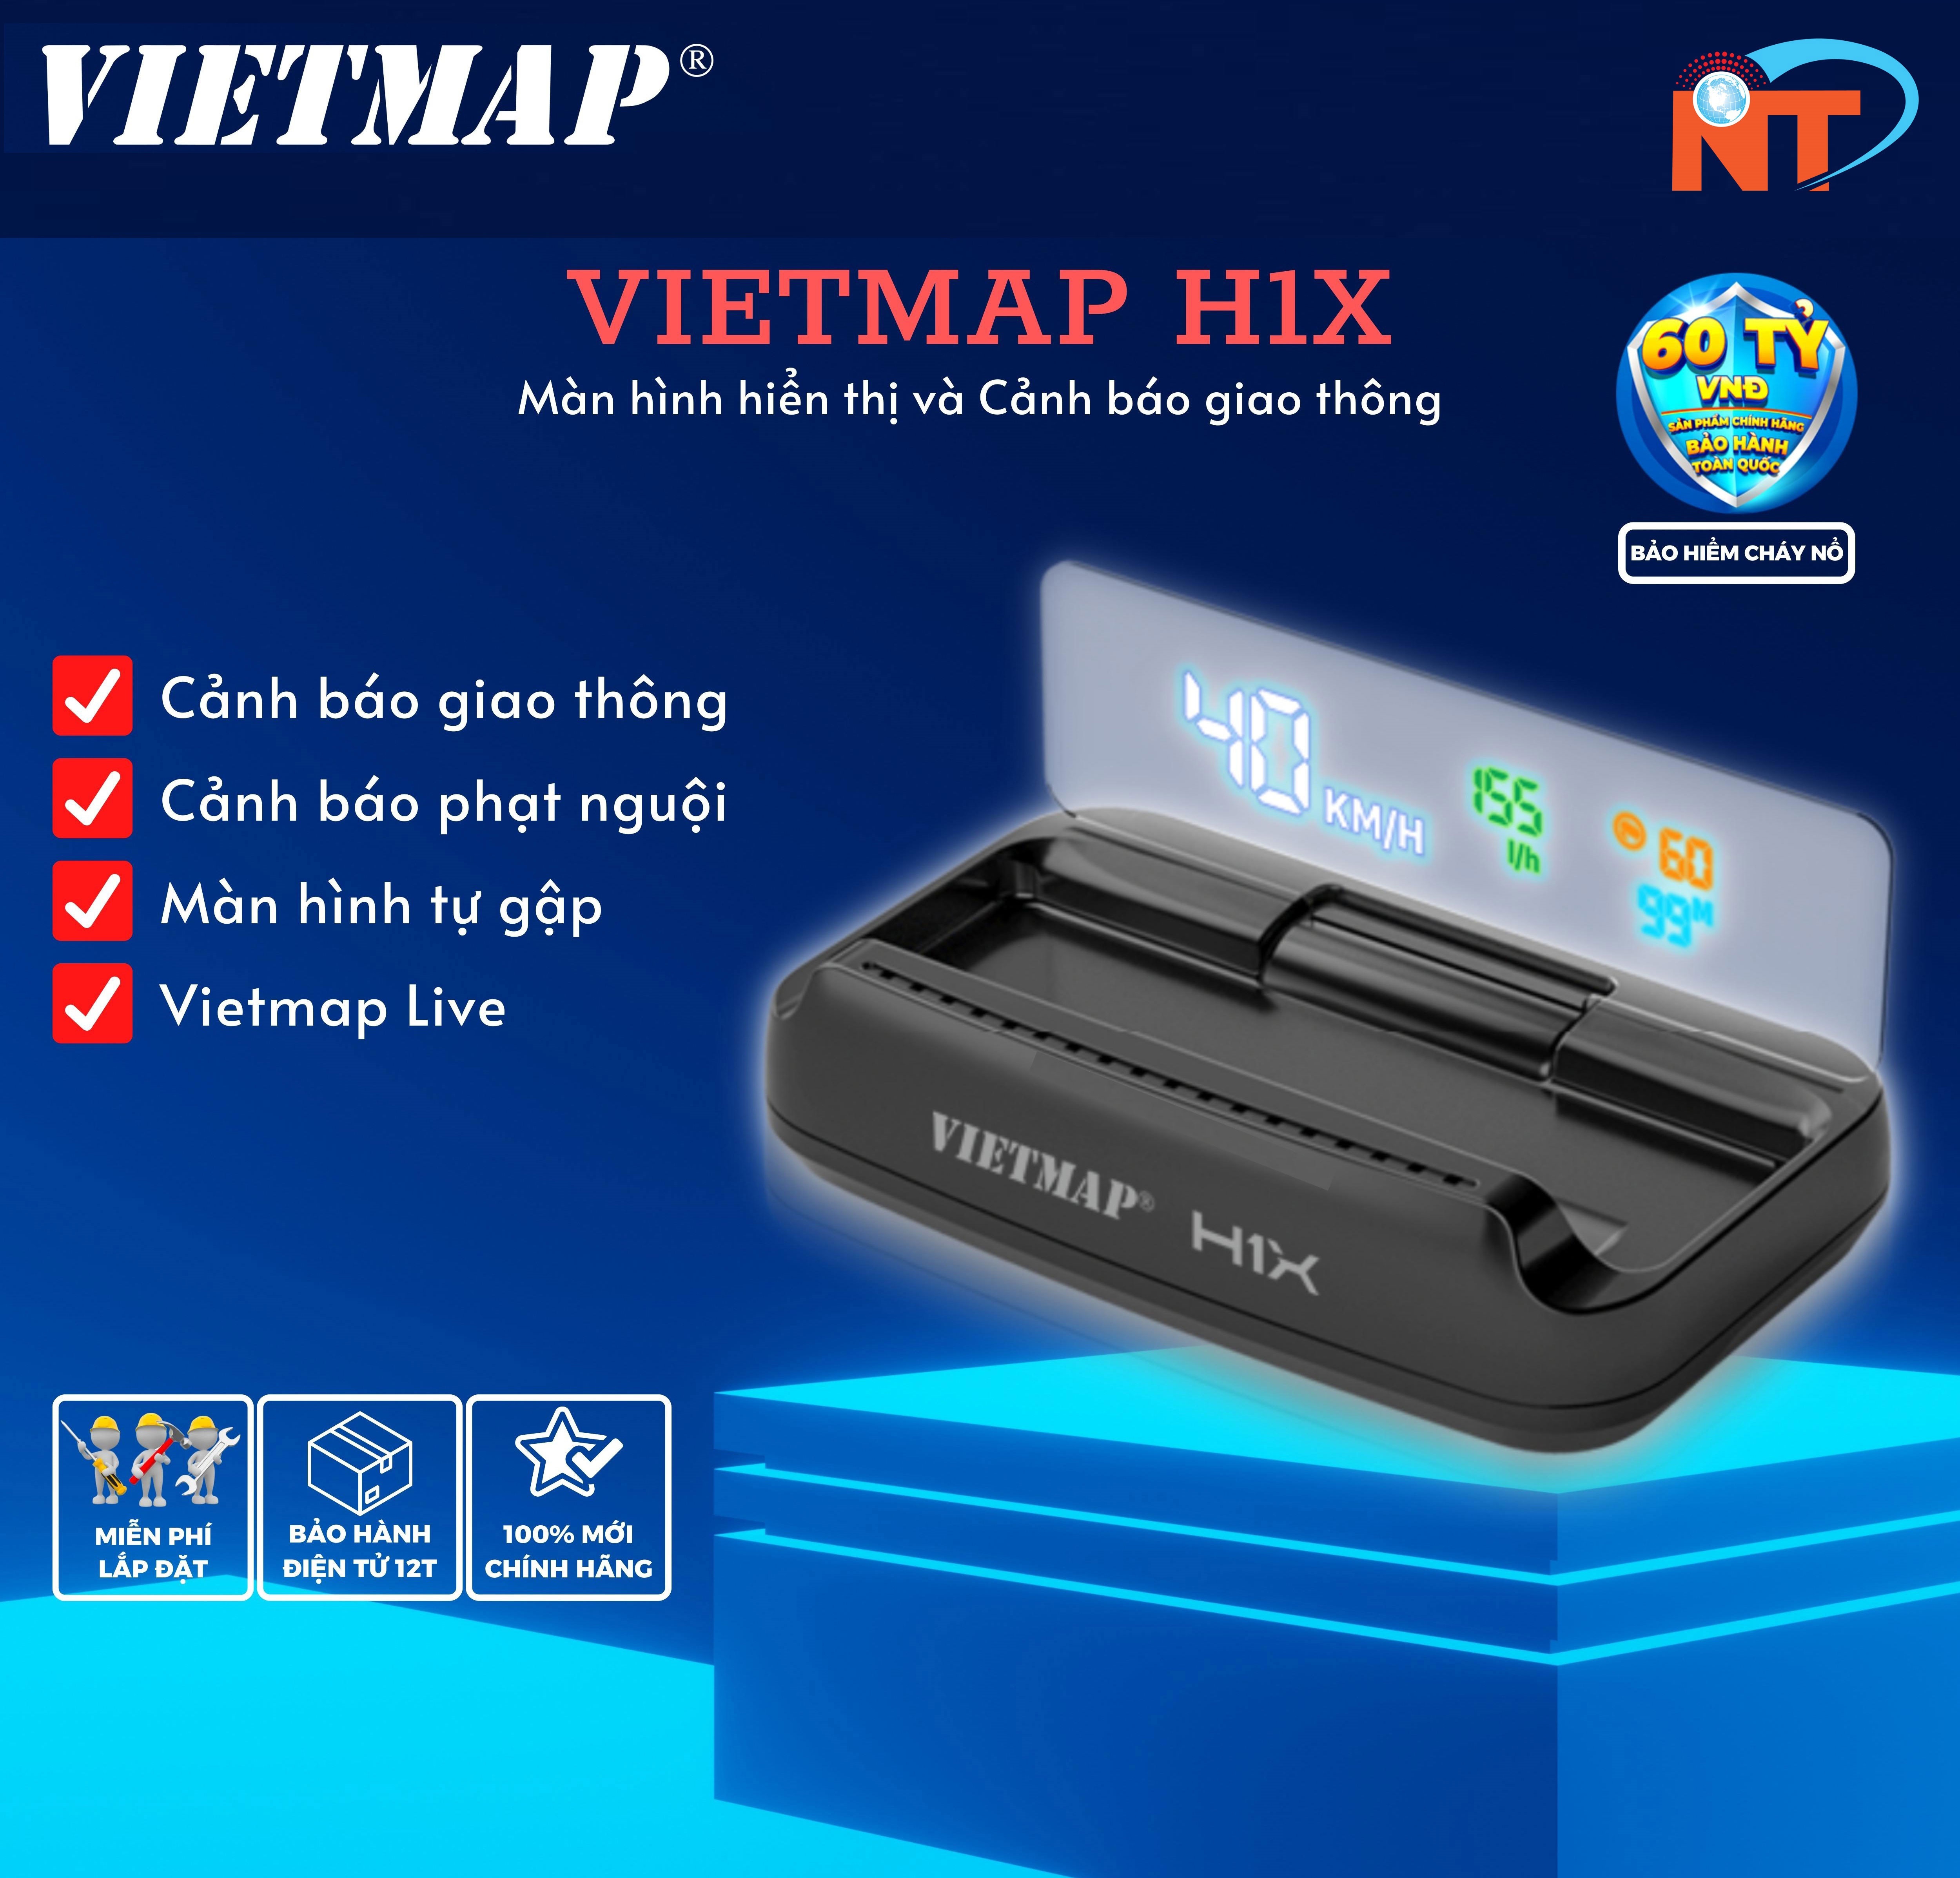 Màn hình hiển thị Vietmap H1X - Cảnh báo tốc độ giới hạn - Camera giao thông - Hàng chính hãng